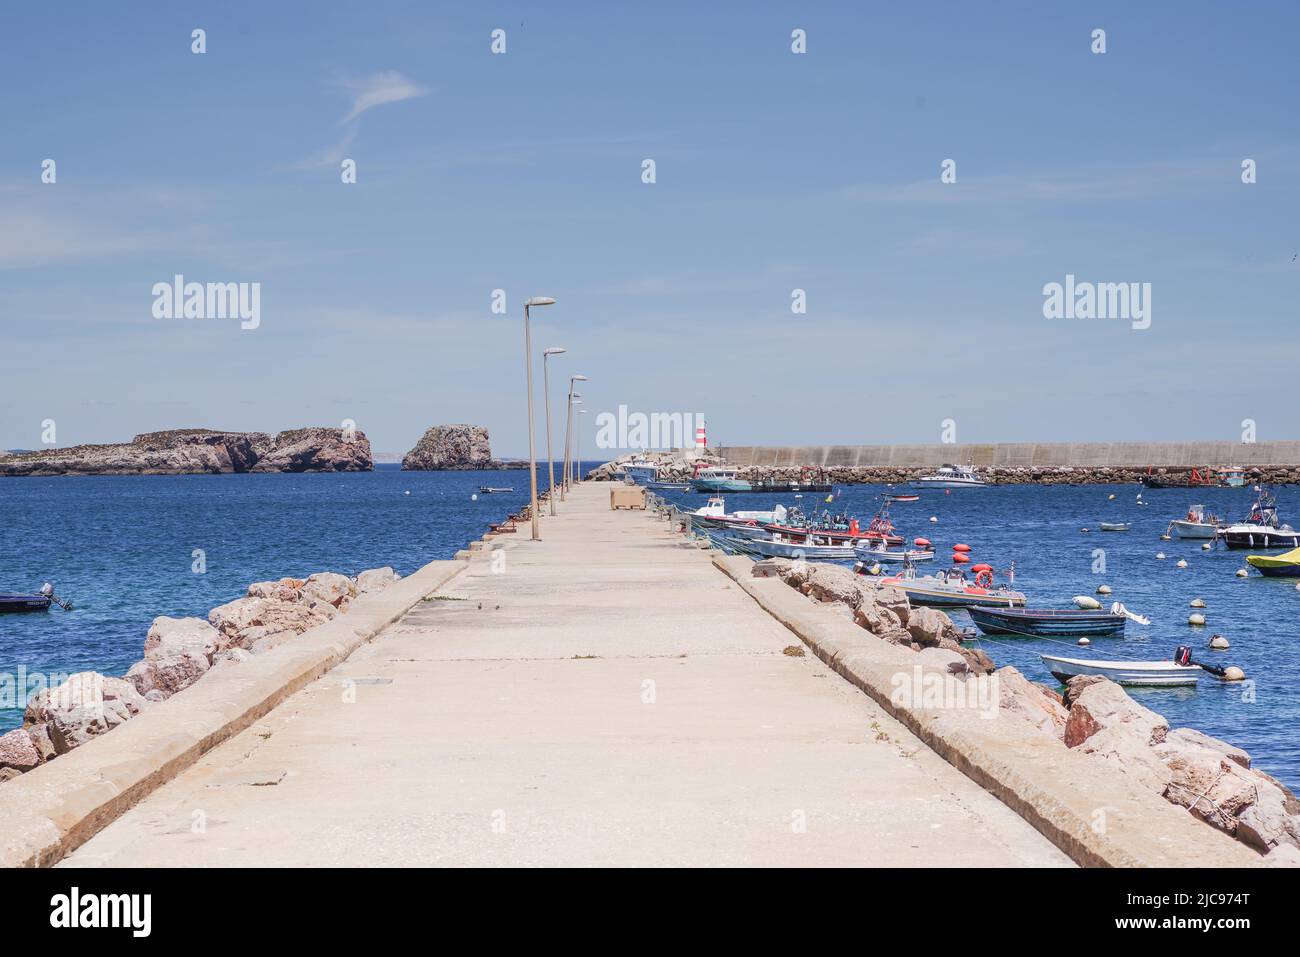 La entrada al puerto de Sagres está protegida por islotes Martinhal (al fondo) - Sagres, Algarve, Portugal Foto de stock